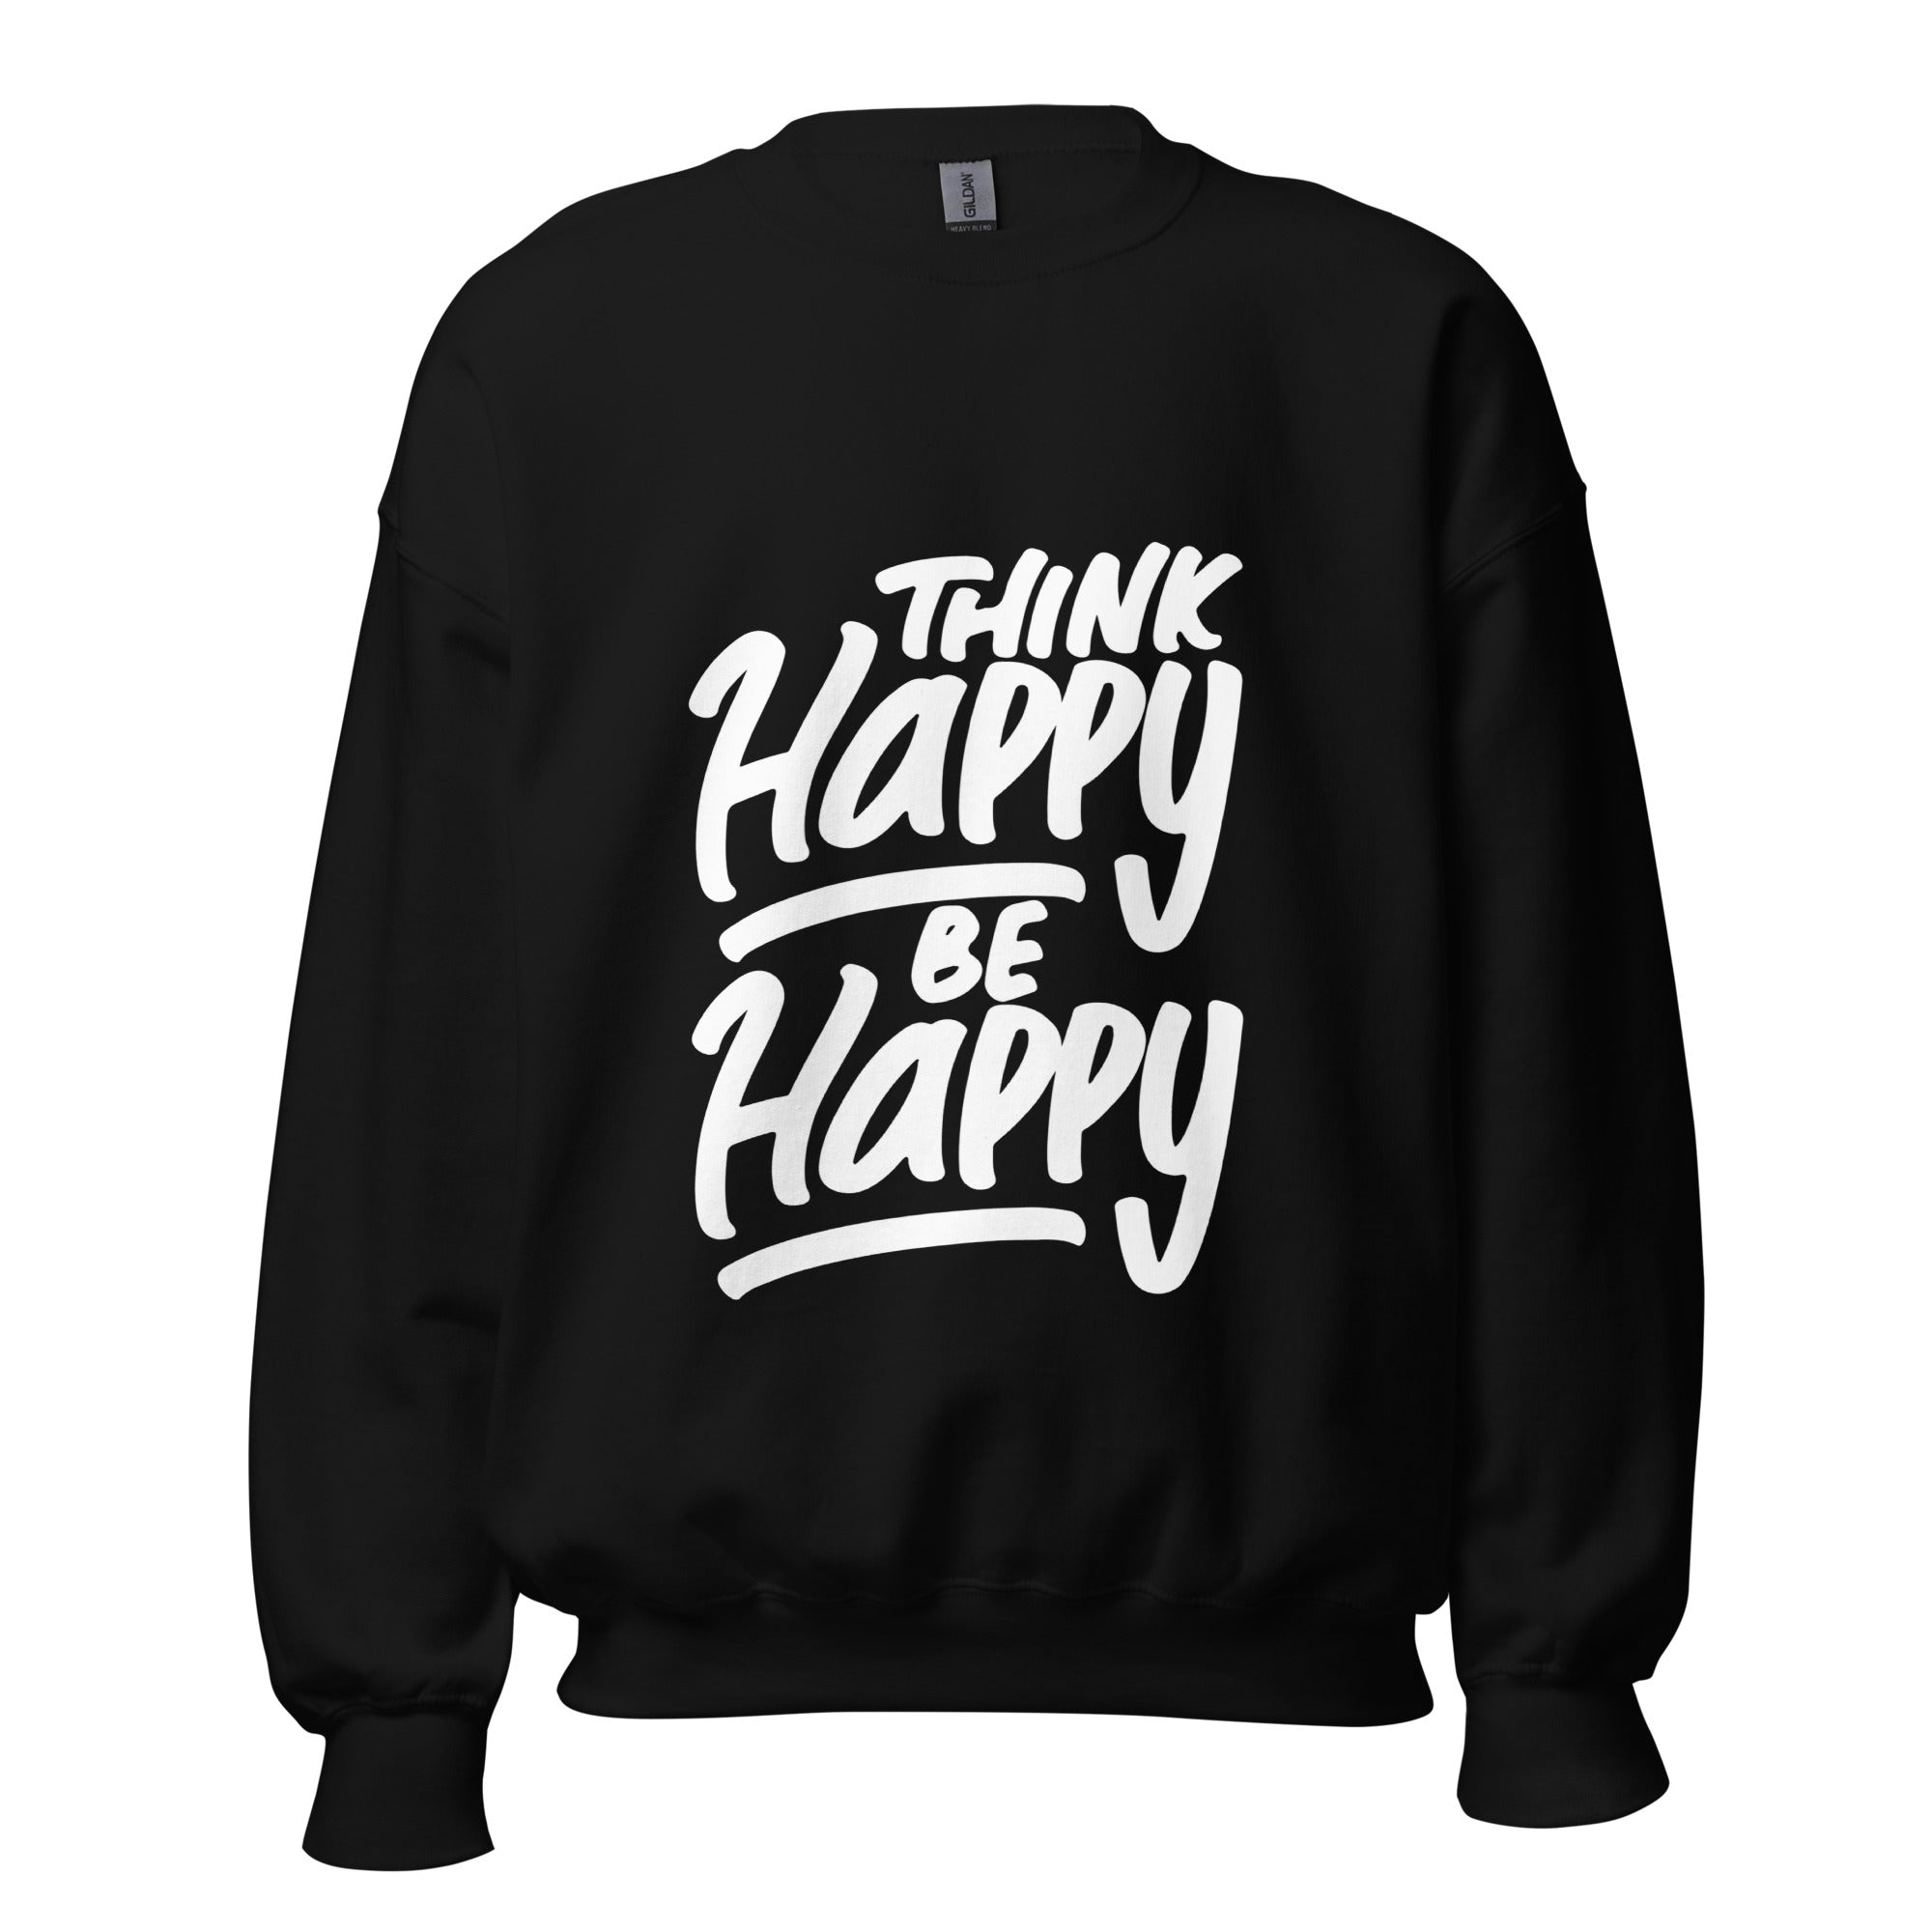 Be happy Sweatshirt for men